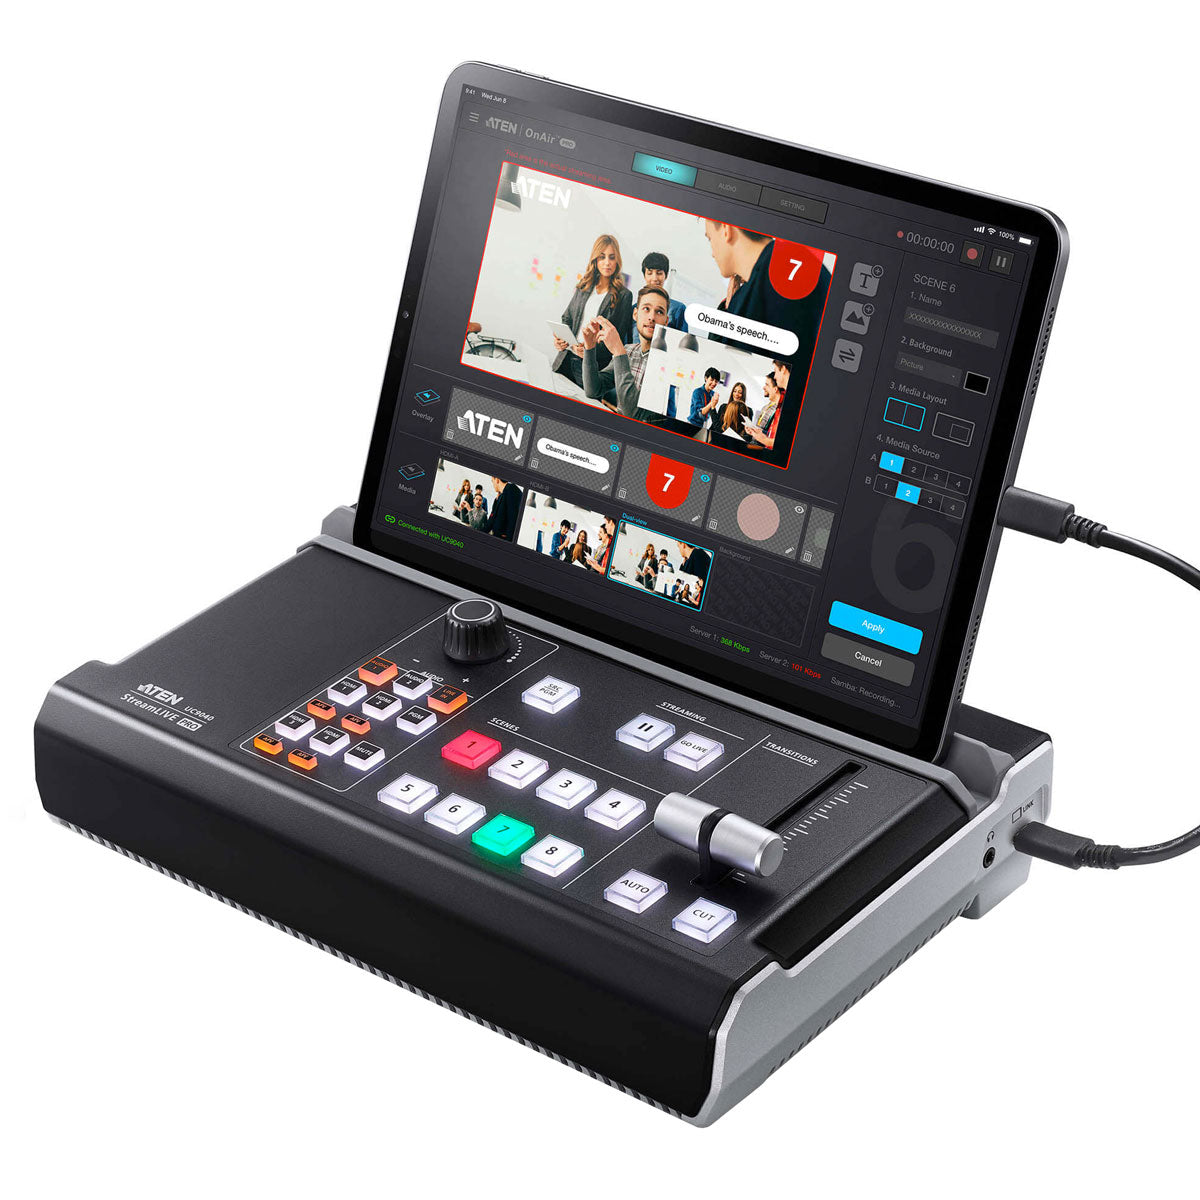 Aten UC9040 StreamLive Pro All-in-one Multi-channel AV Mixer